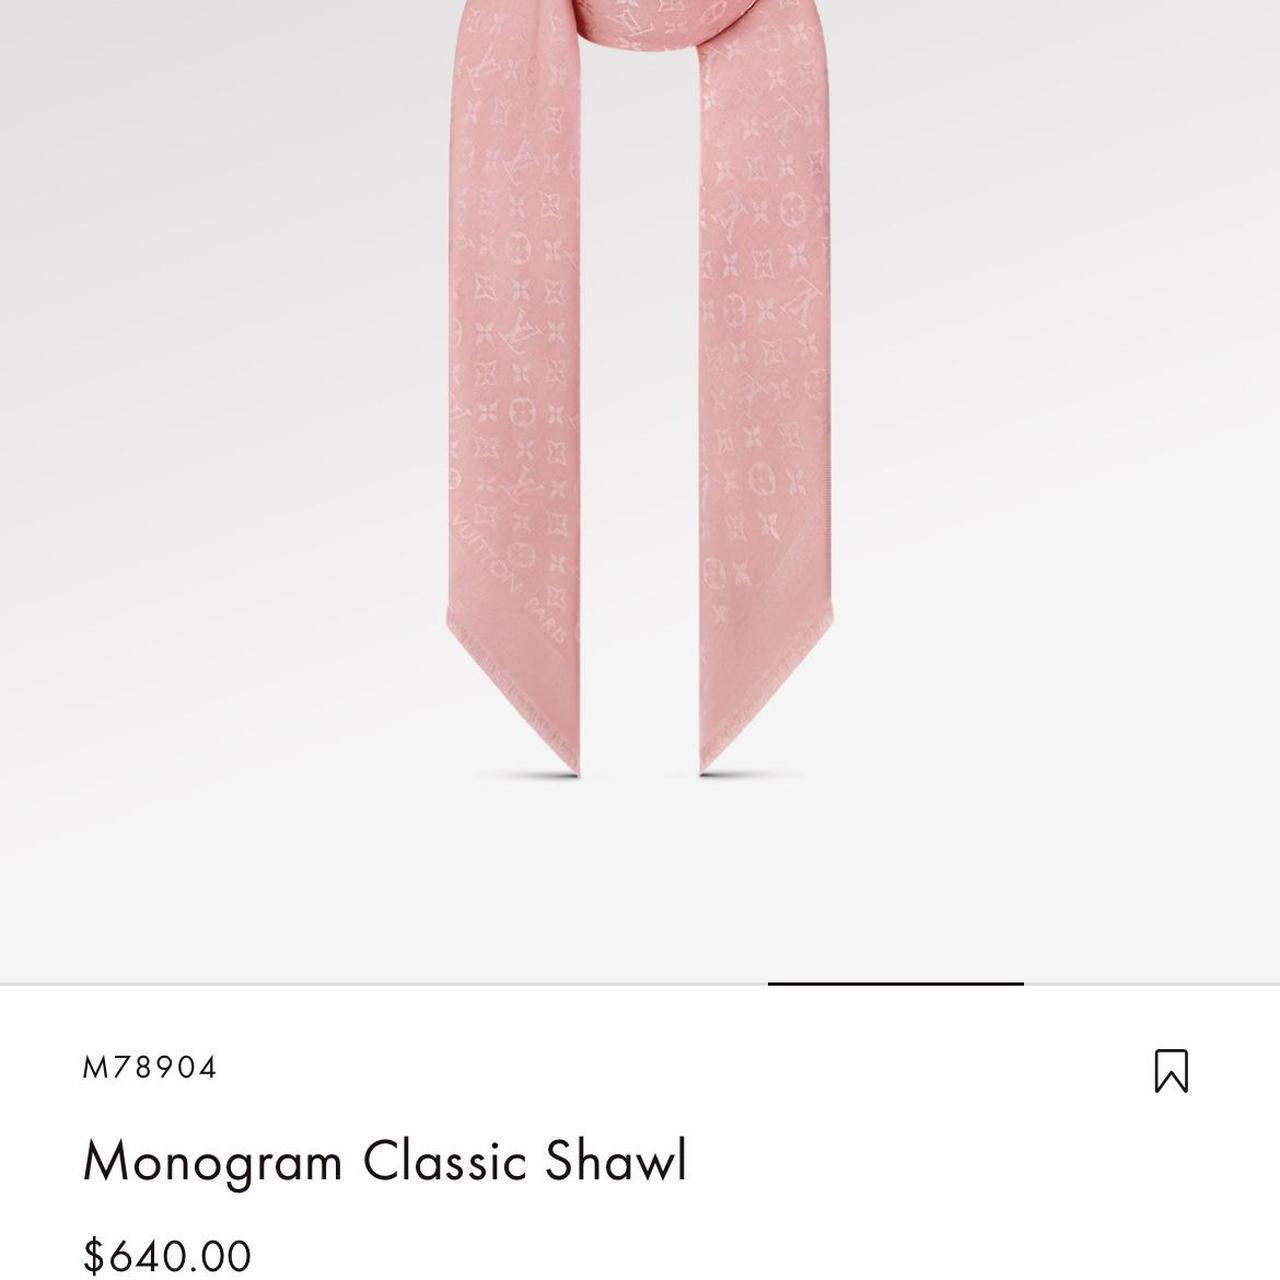 Louis Vuitton Monogram Classic Shawl! Color is most - Depop